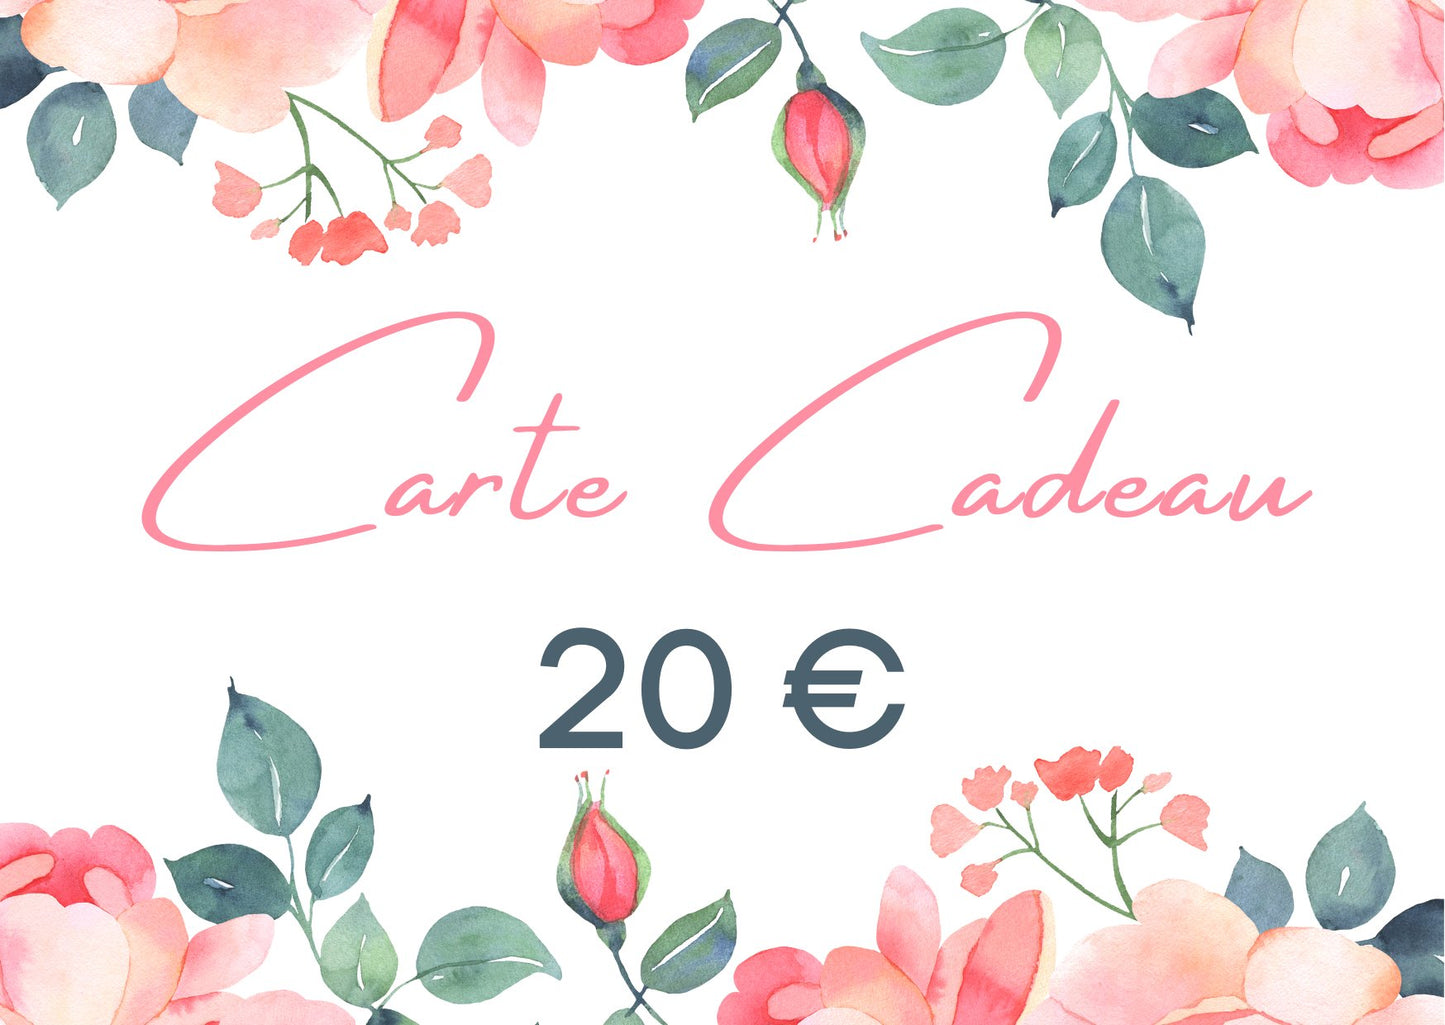 Carte Cadeau - The Eco Shop Cartes-cadeaux